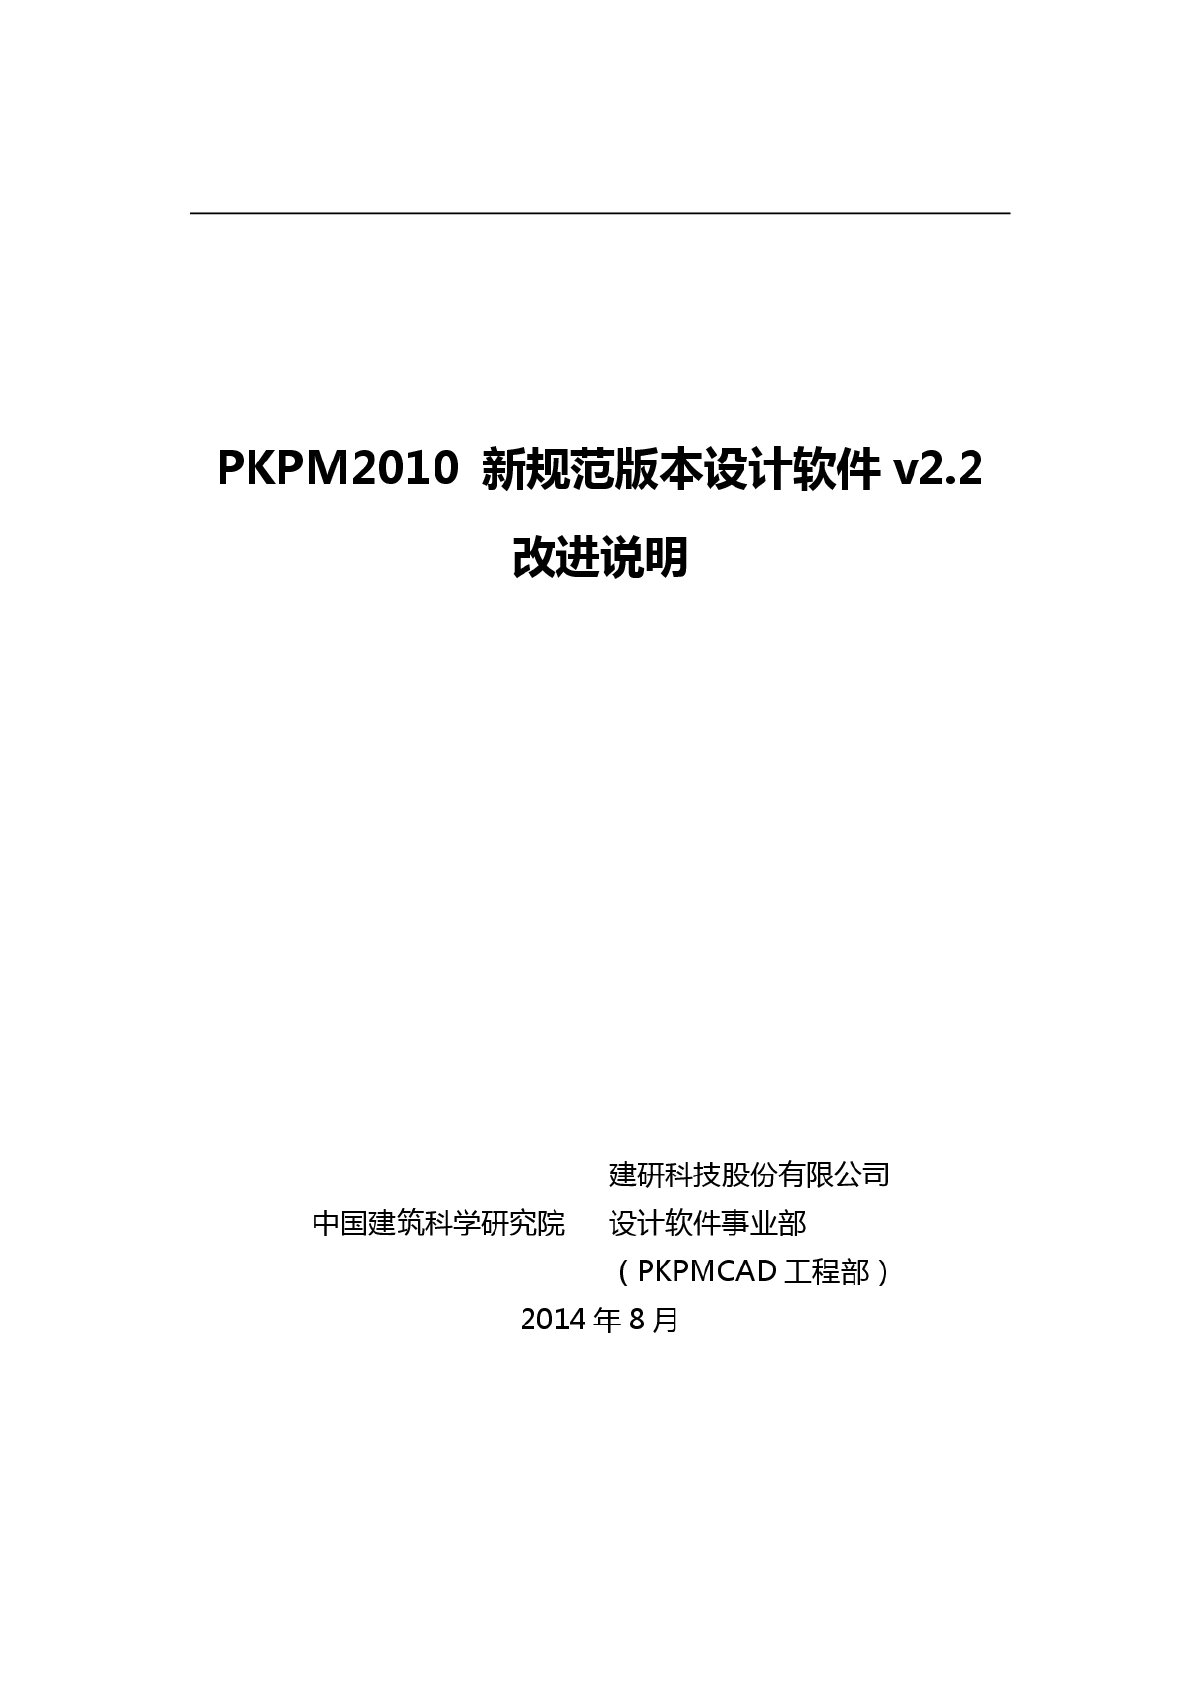 最新版PKPM2010 V2.2改进说明-图一